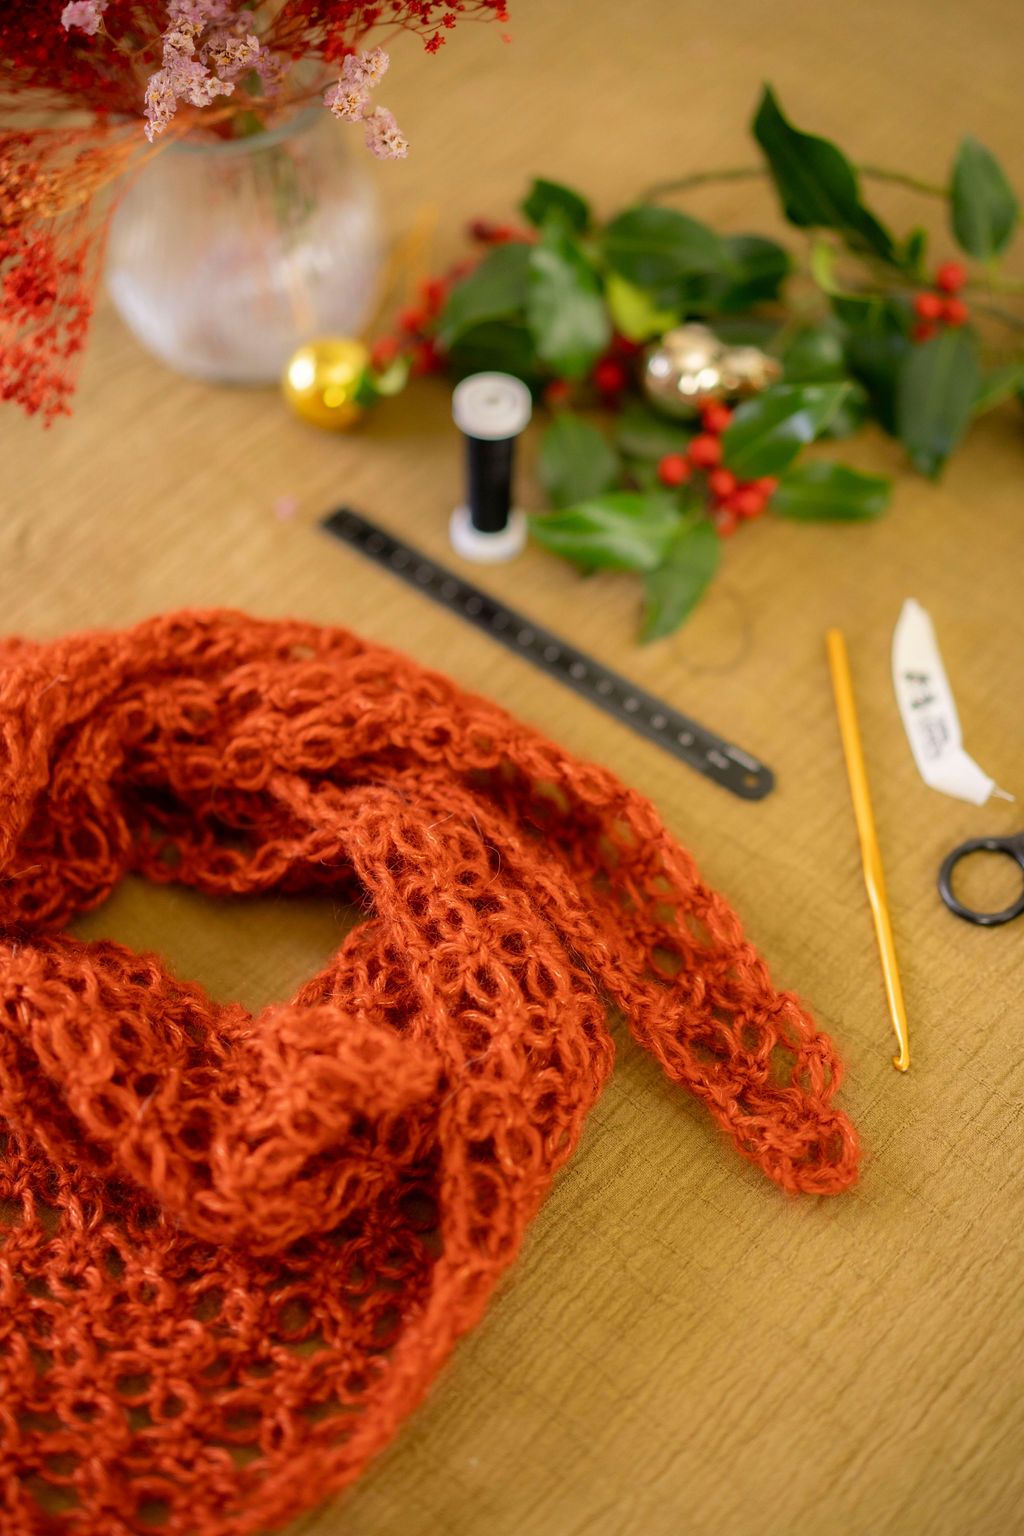 8 projets à tricoter avec une seule pelote de laine